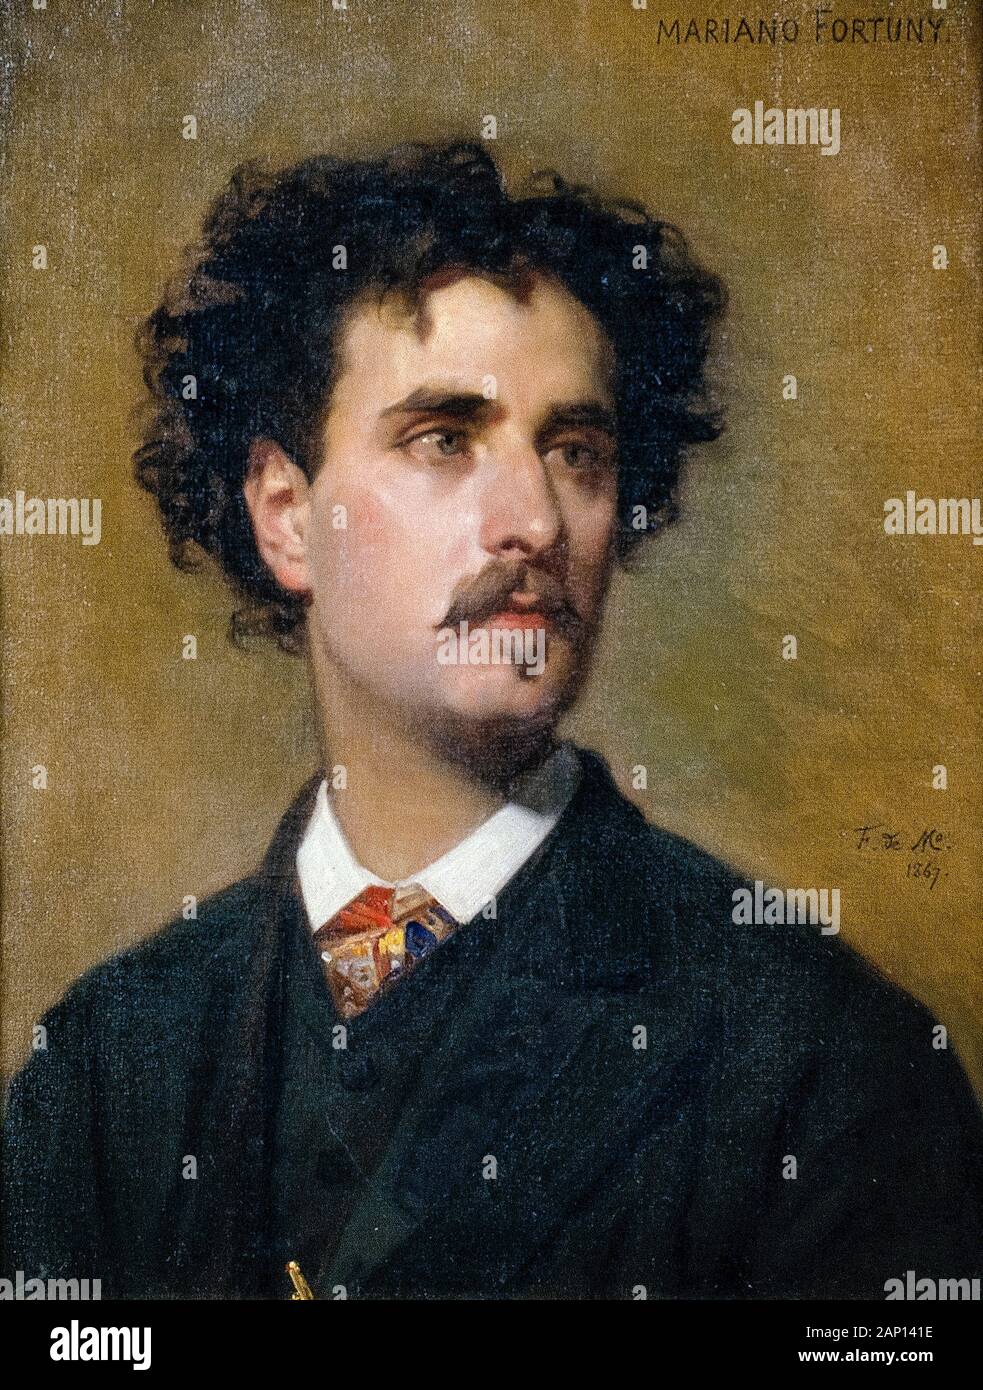 Mariano Fortuny (1838-1874), retrato pintado por Federico de Madrazo y Kuntz, 1867 Foto de stock